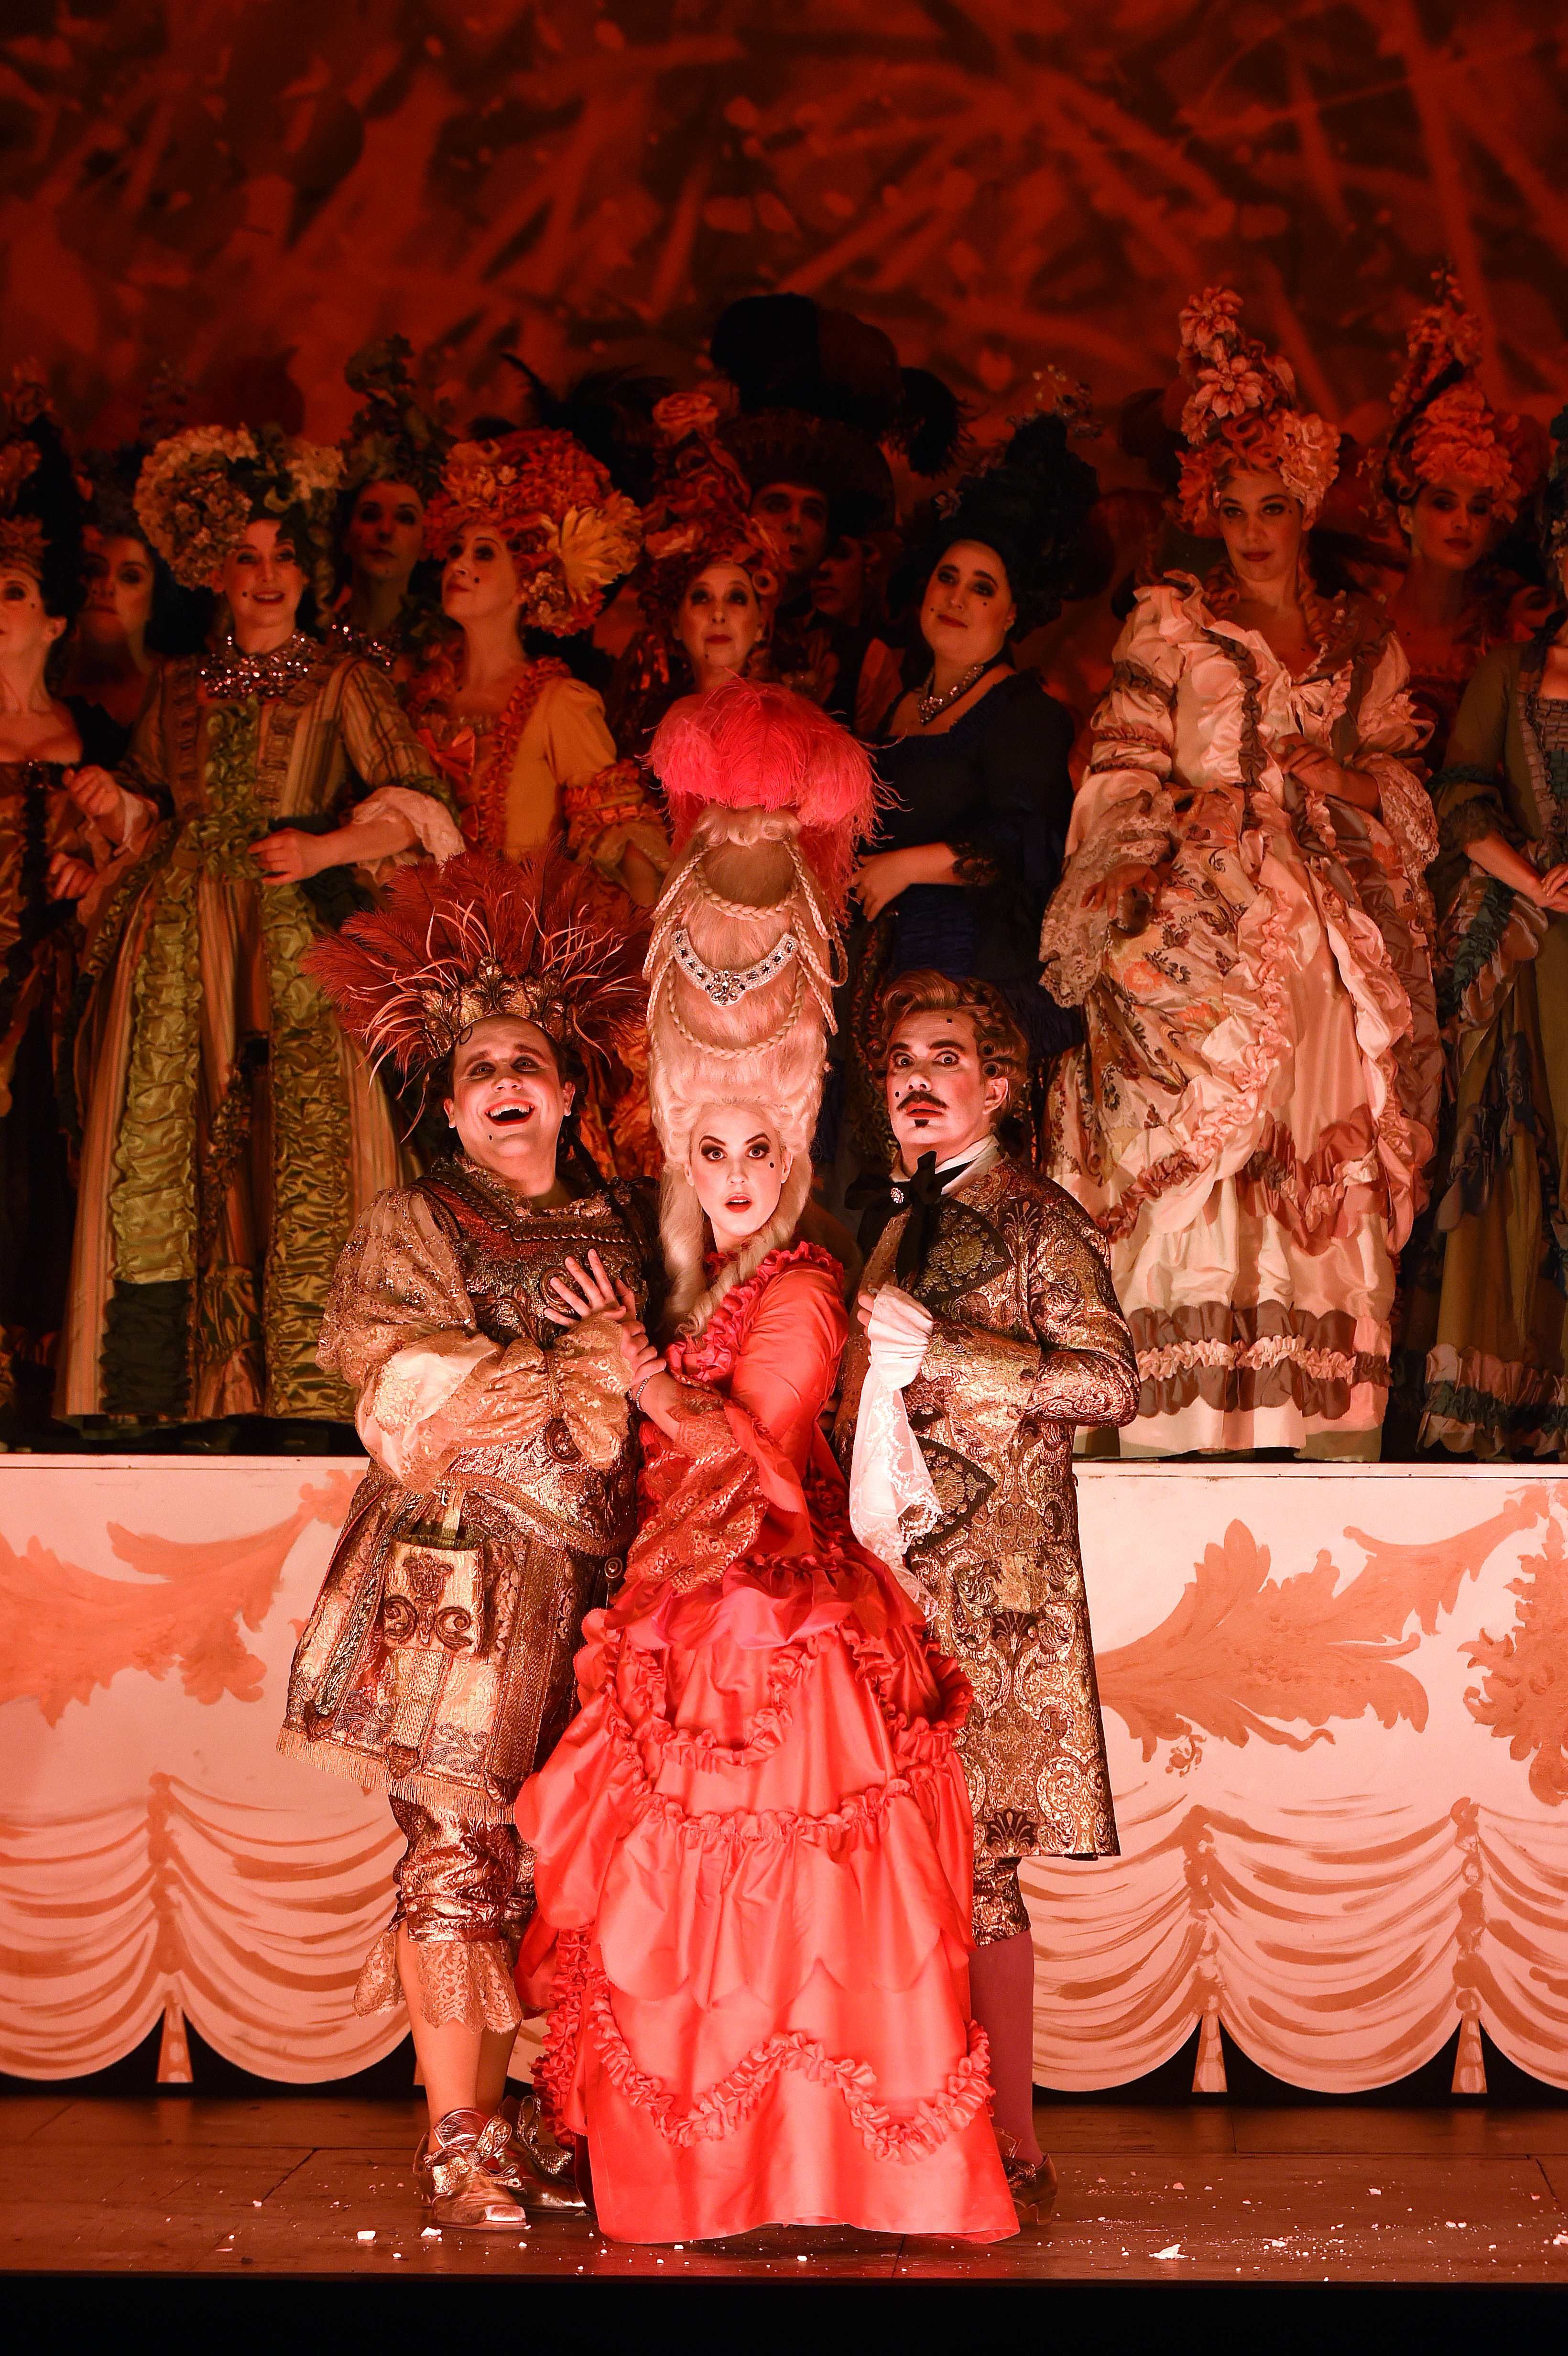 外代,2019年4月3日在法国巴黎,演员在歌剧《隆瑞莫的马车夫》中表演